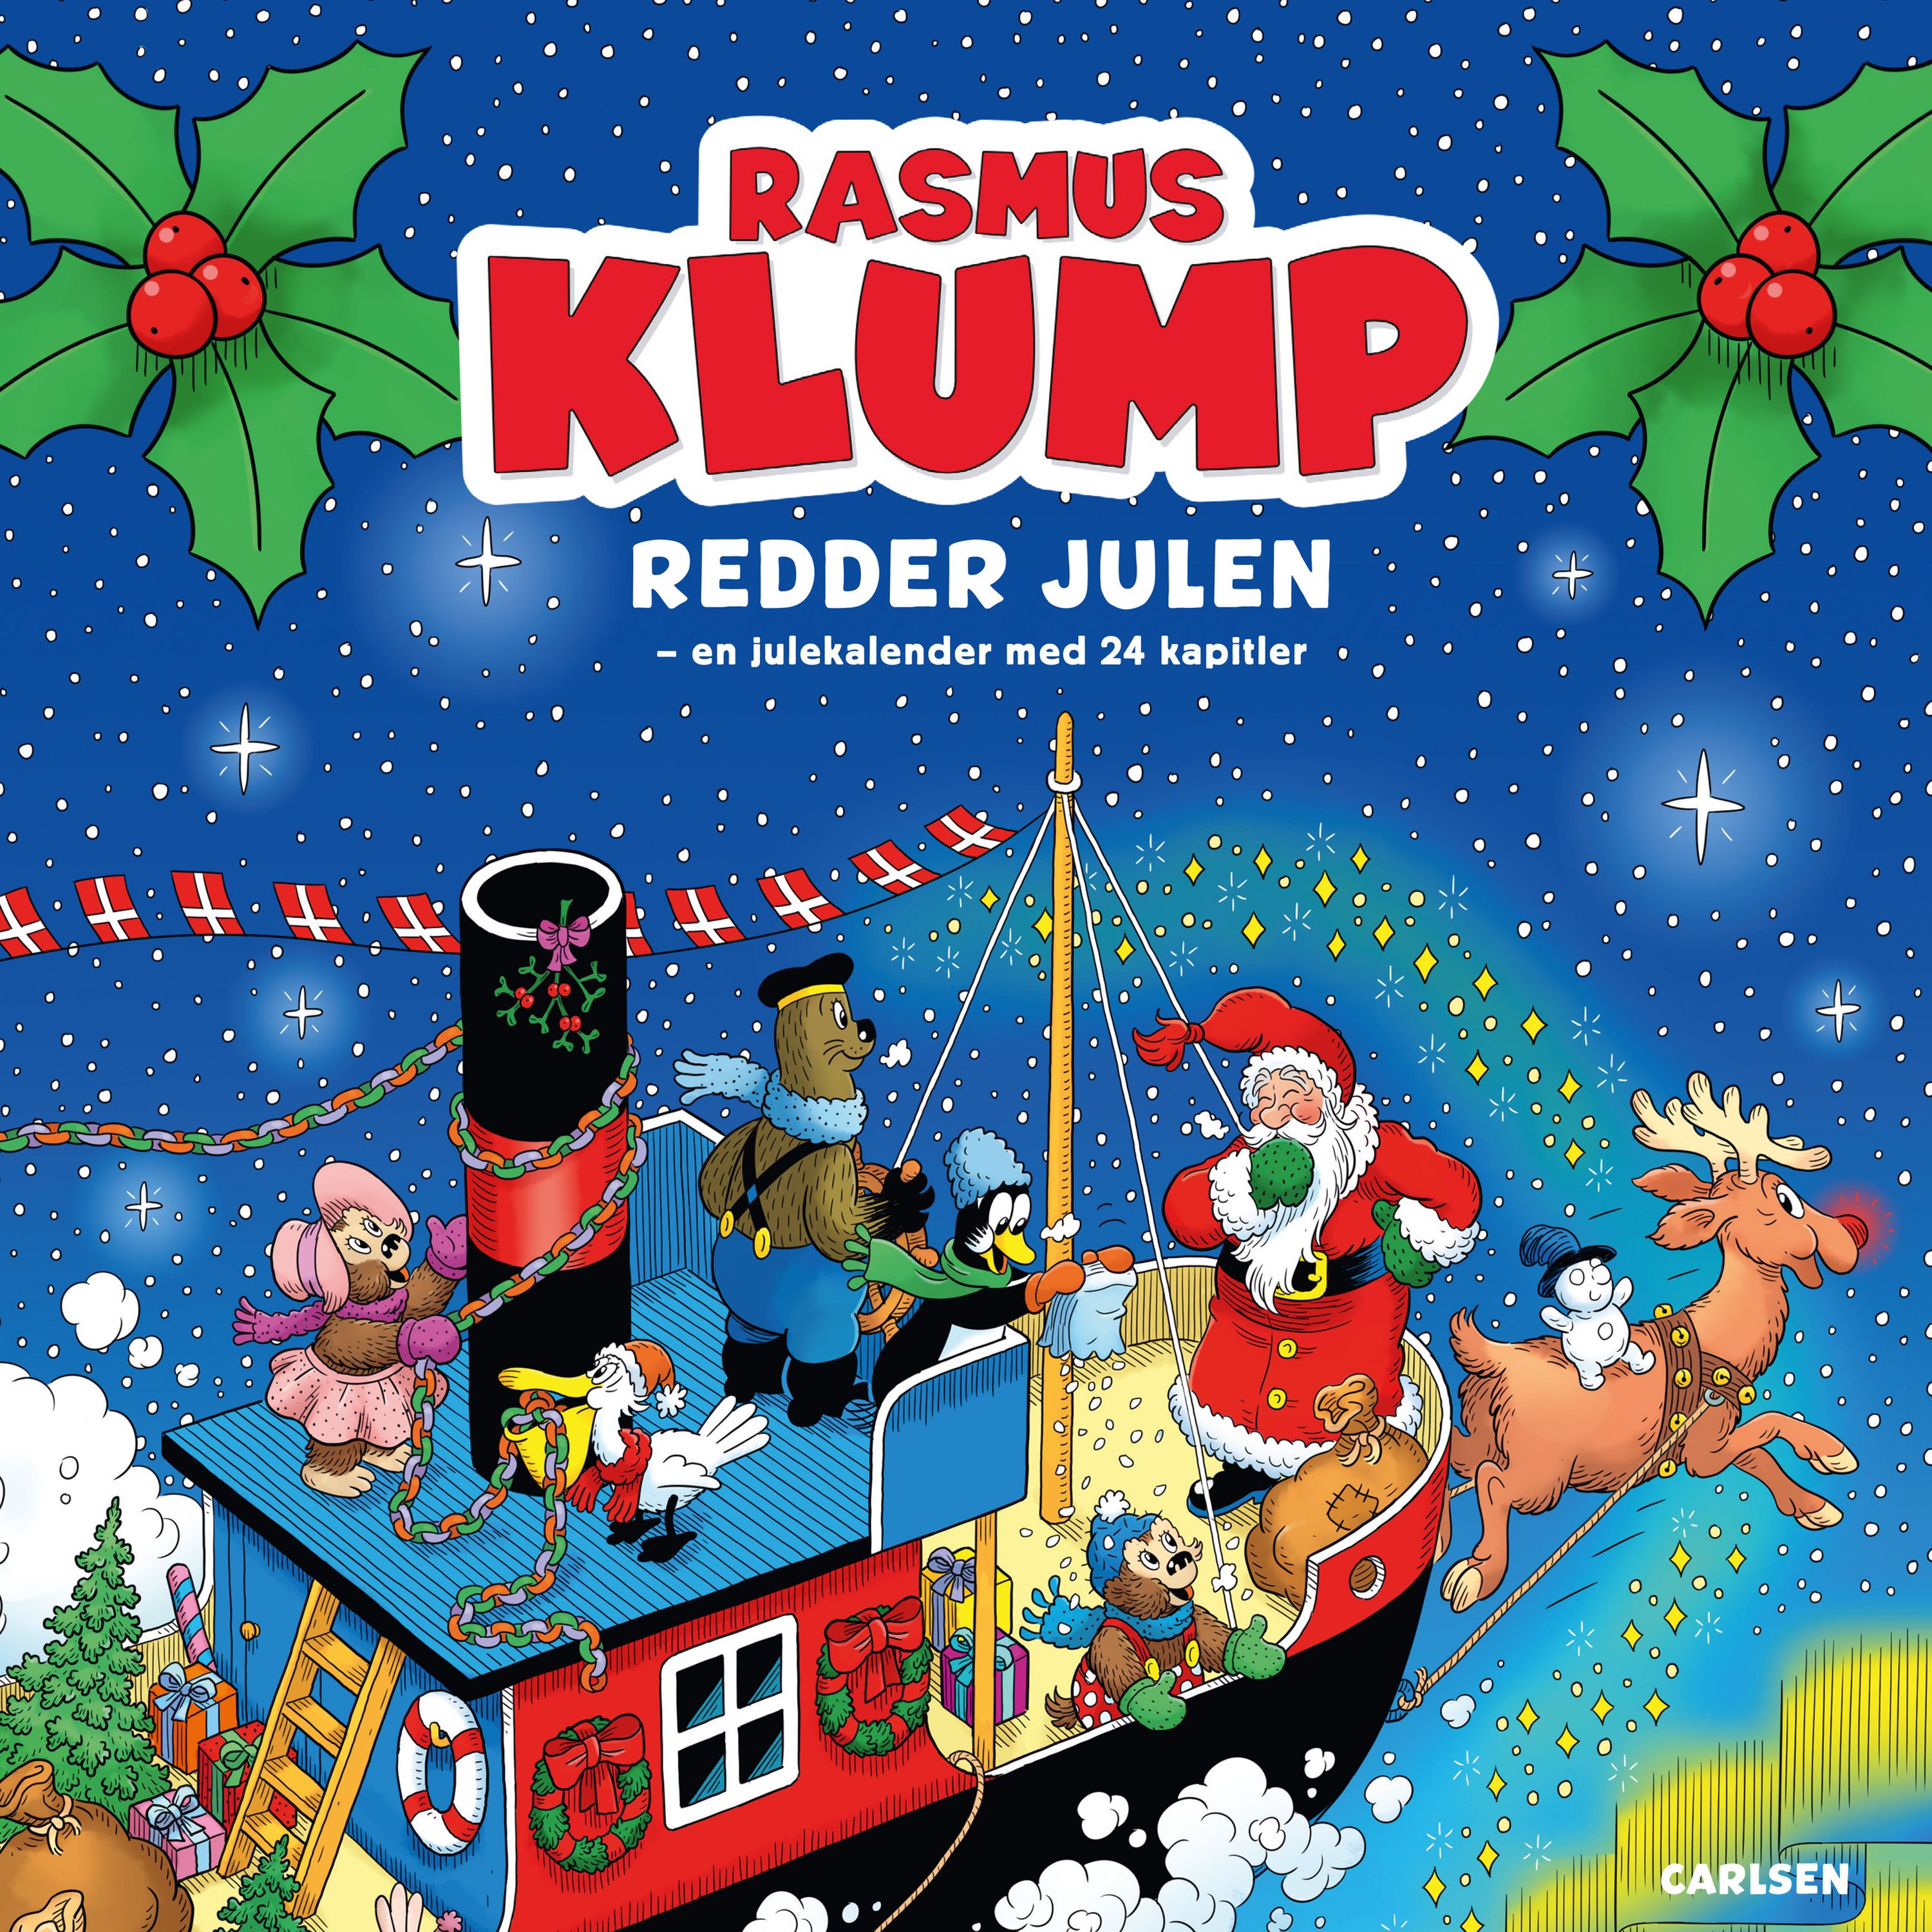 Rasmus Klump redder julen, audiobook by Kim Langer